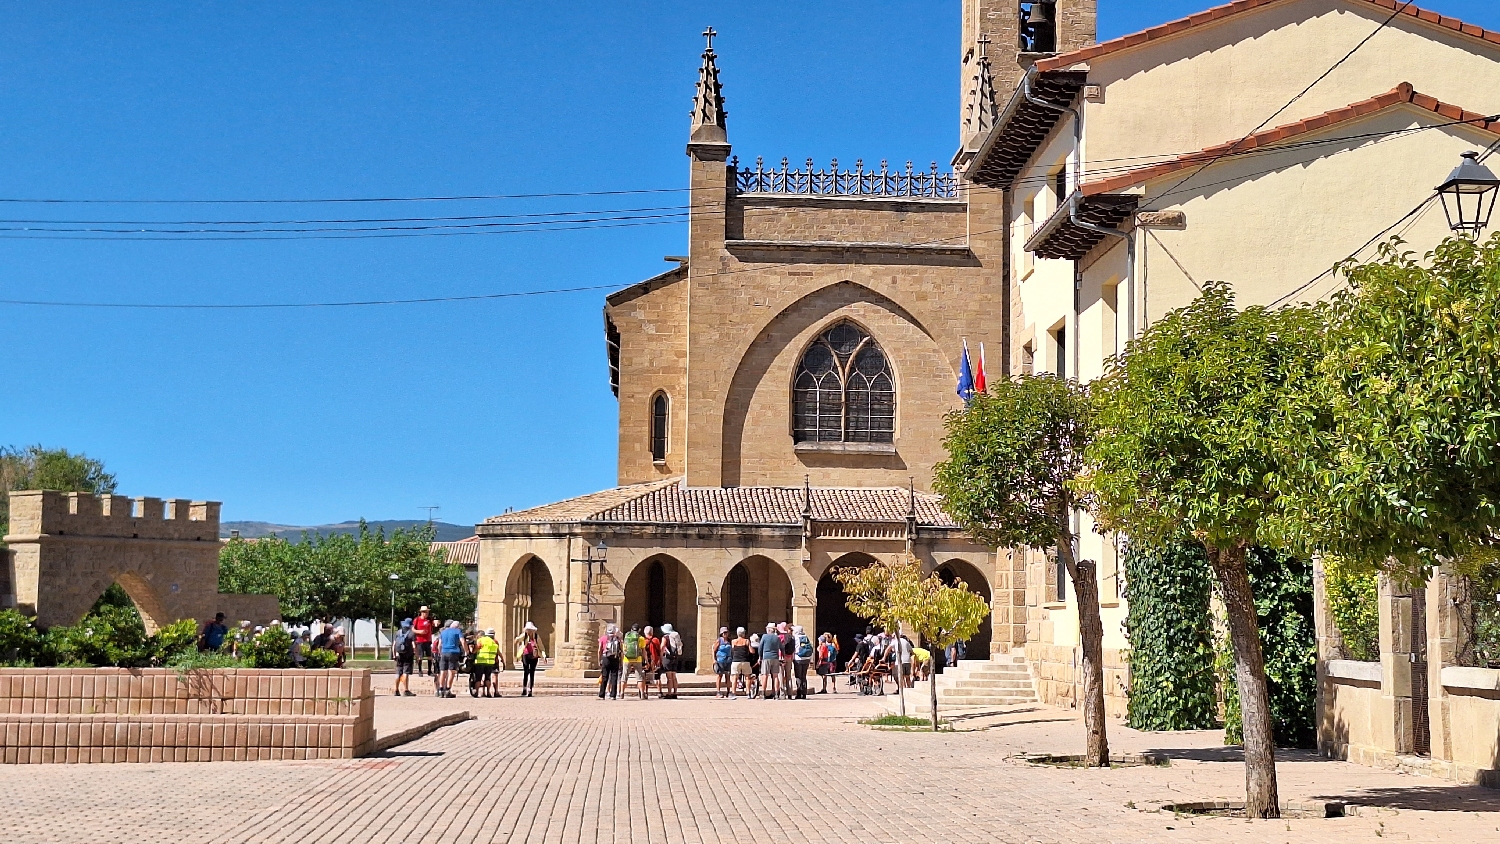 El Camino, Aragon út, Francia út, Óbanosban zarándok-turisták állnak a templom előtt